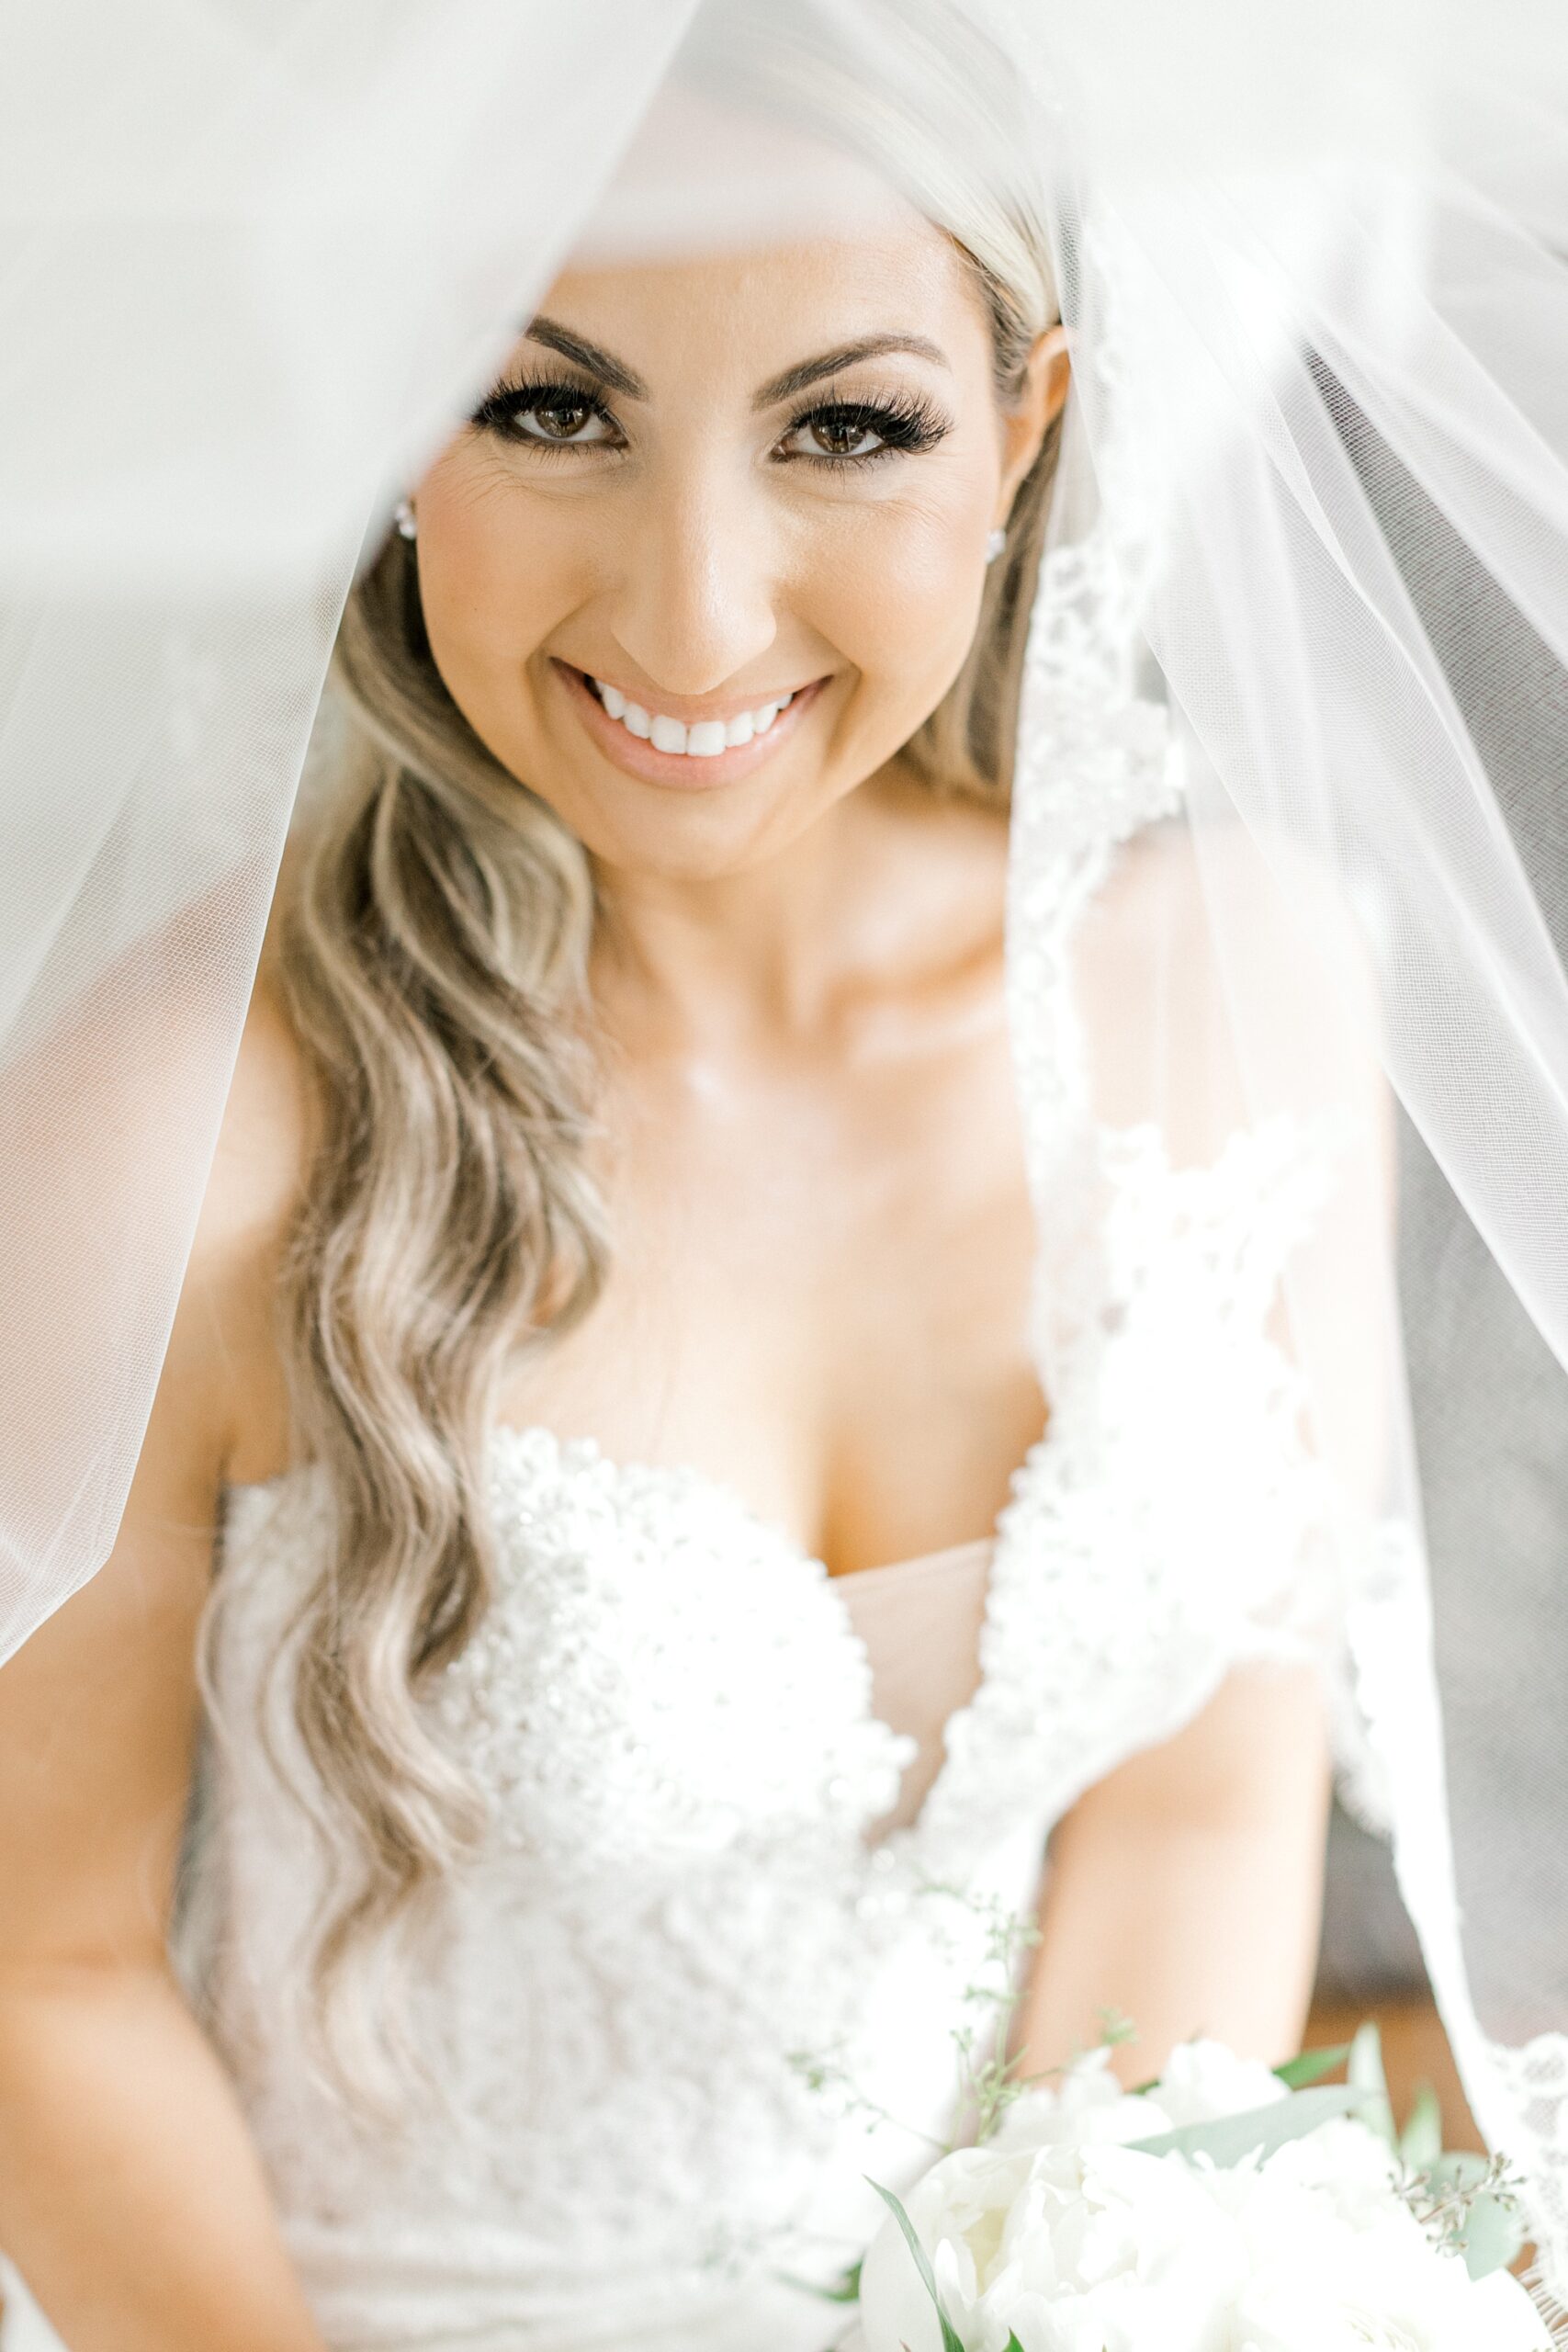 bride smiles under veil in strapless wedding gown